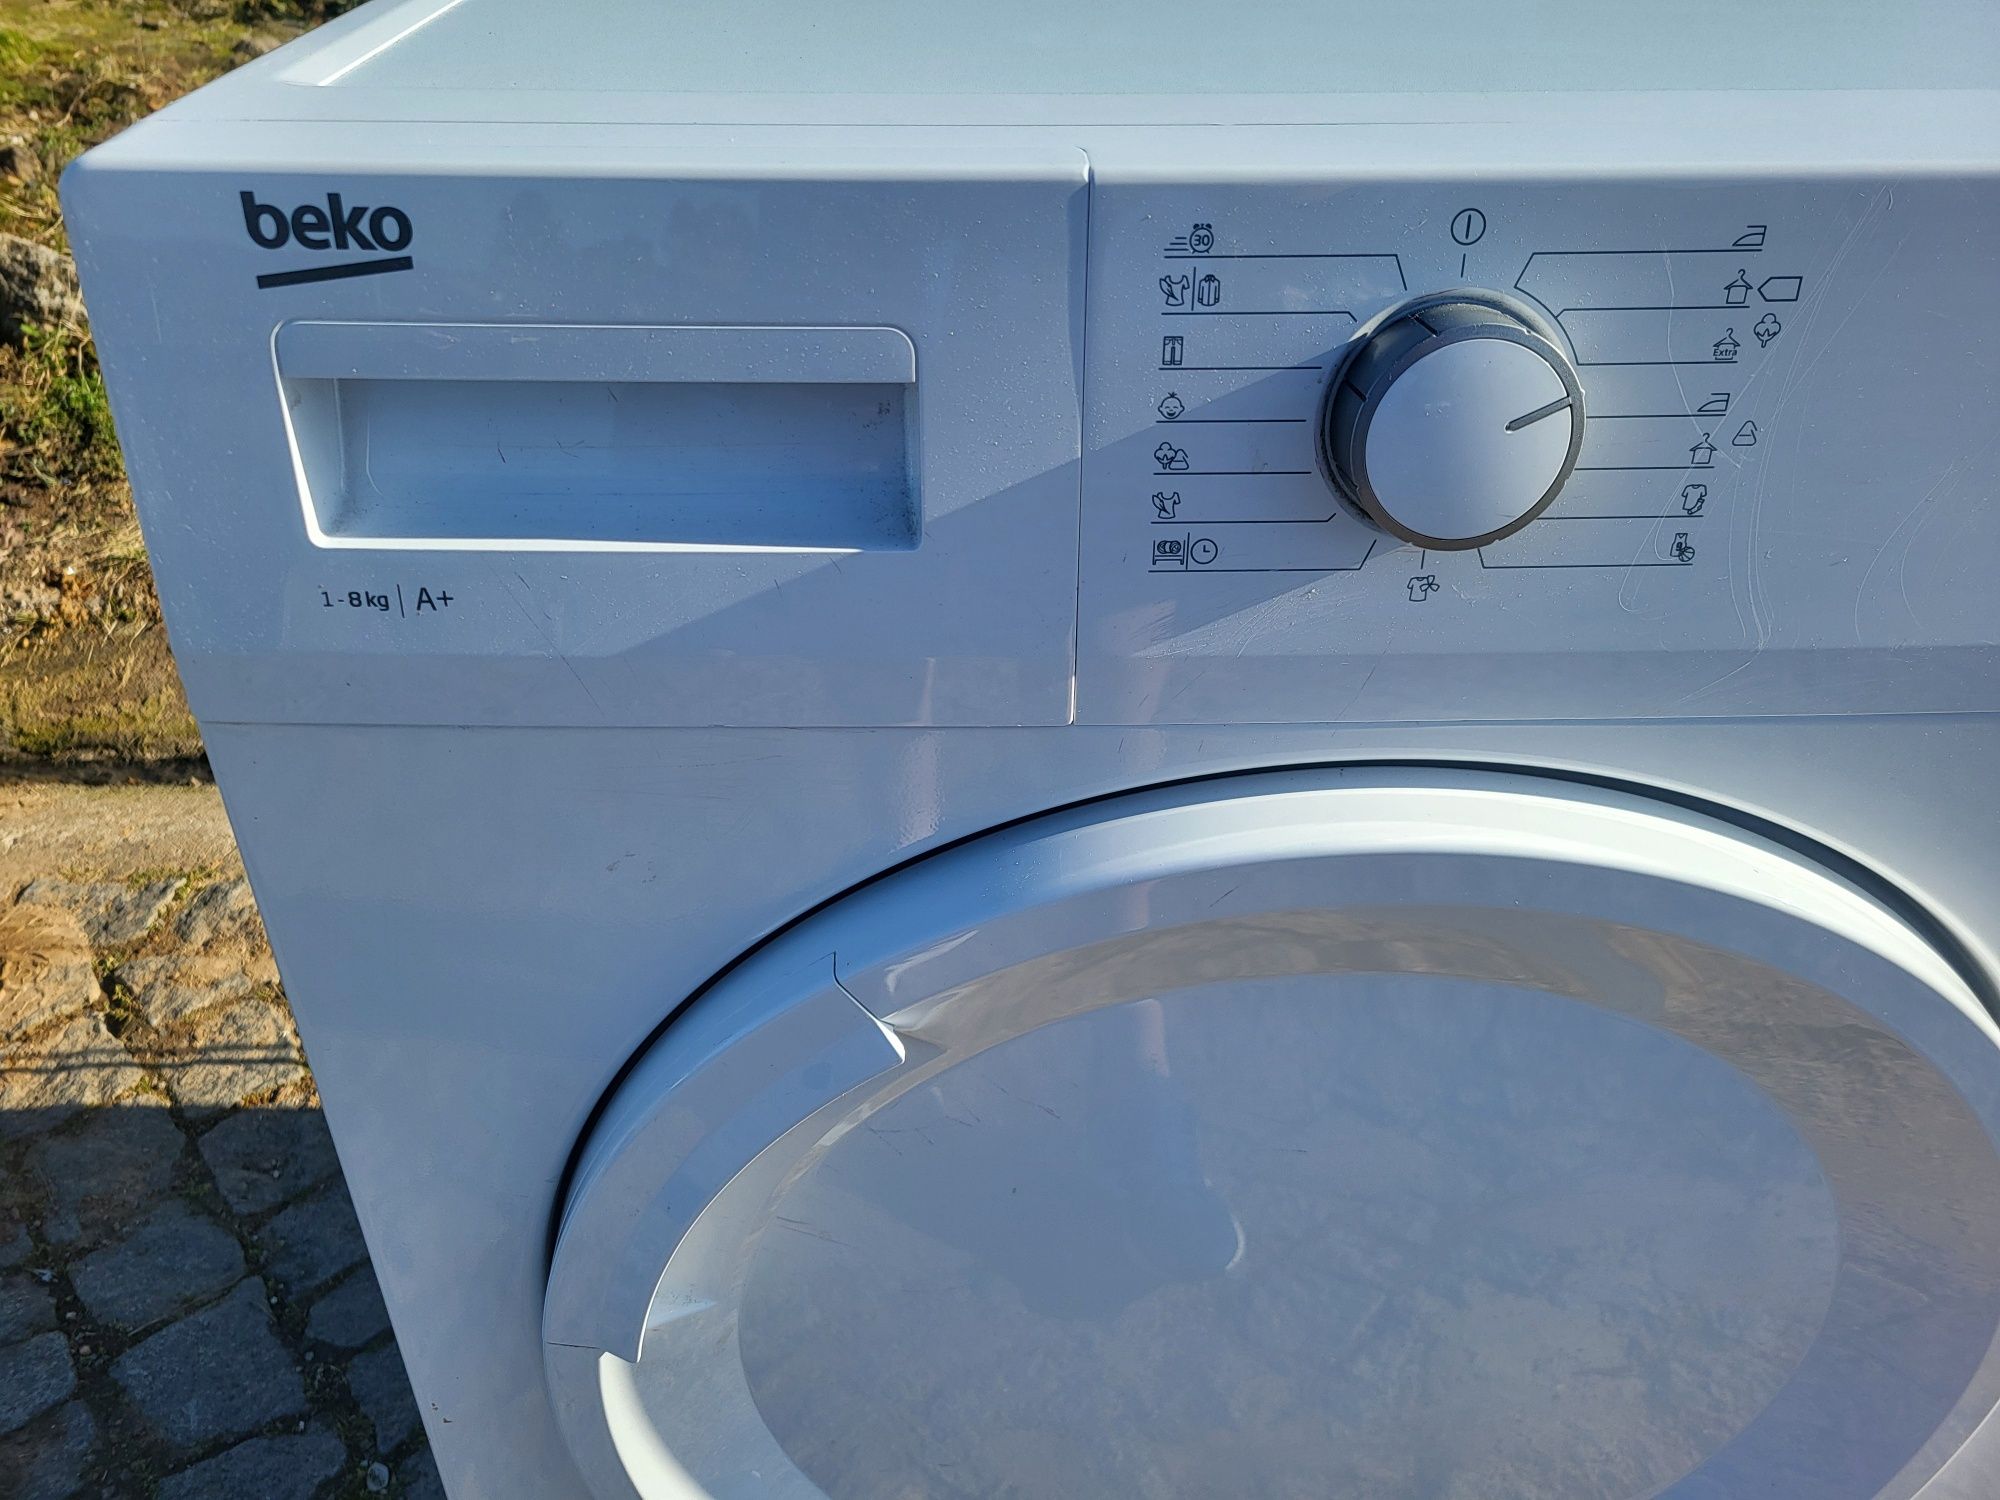 Máquina secar roupa Beko de condensação por bomba de calor com entrega